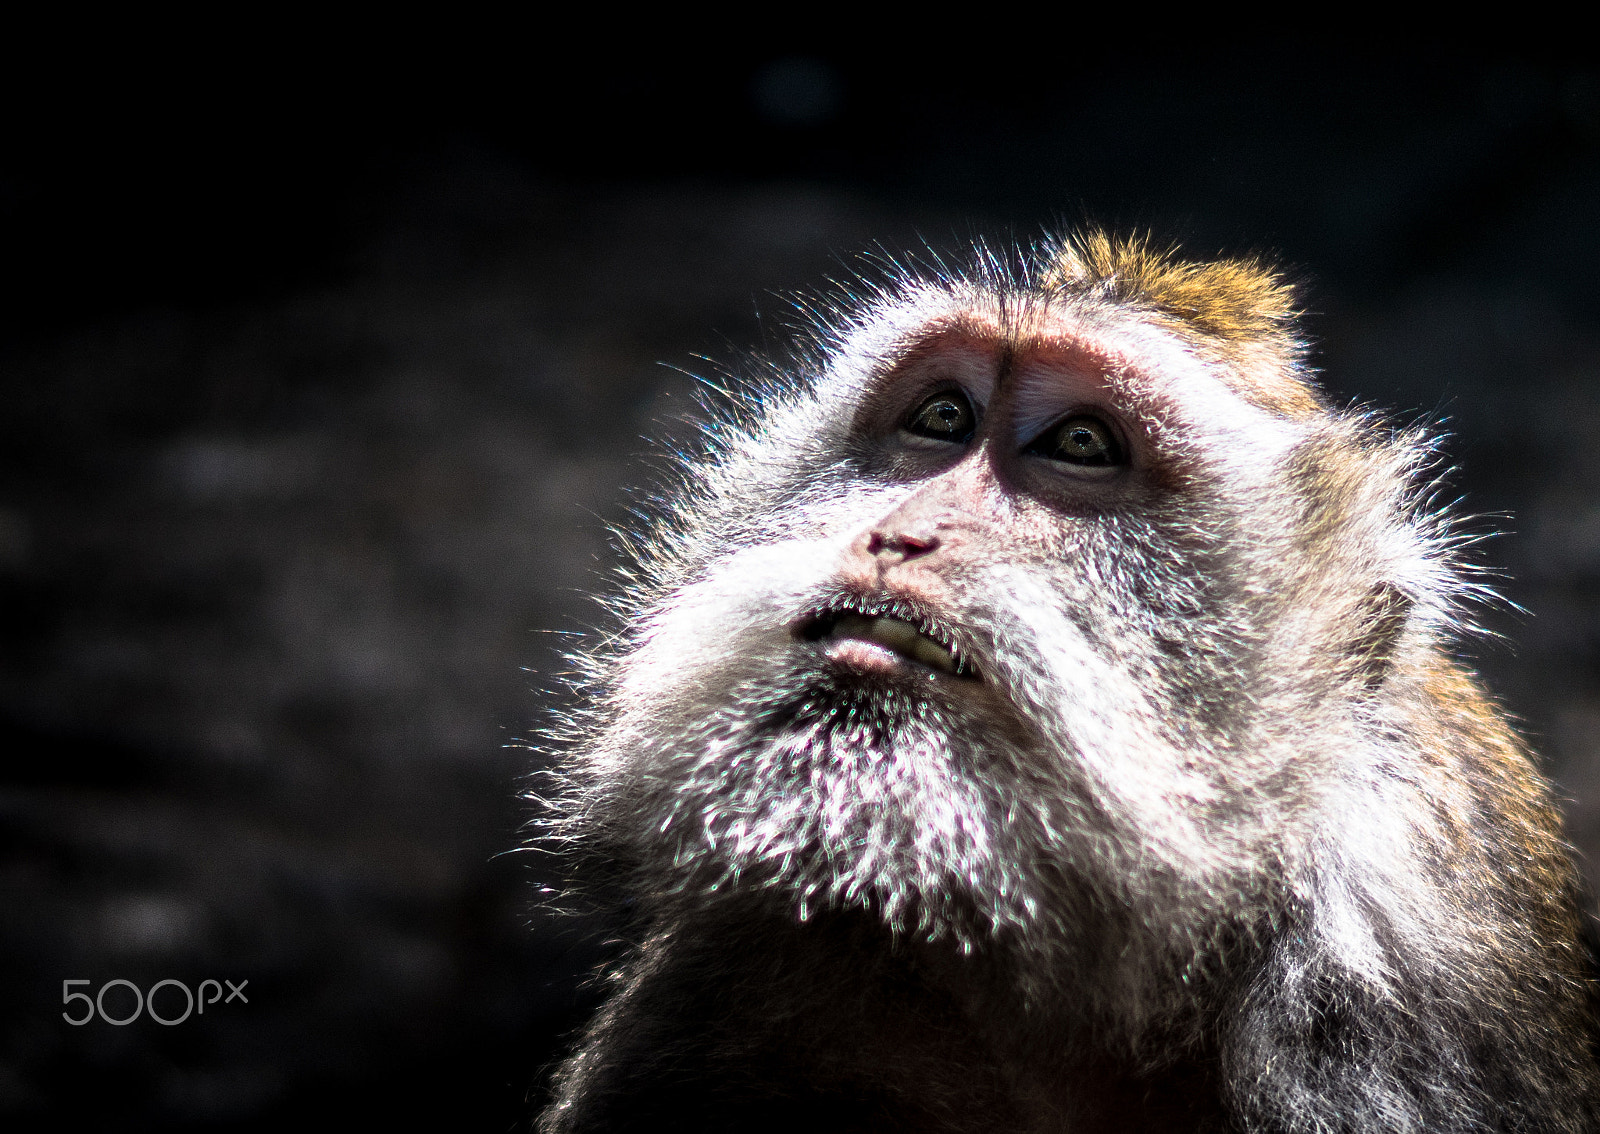 Sony ILCA-77M2 sample photo. Ubud monkeys photography